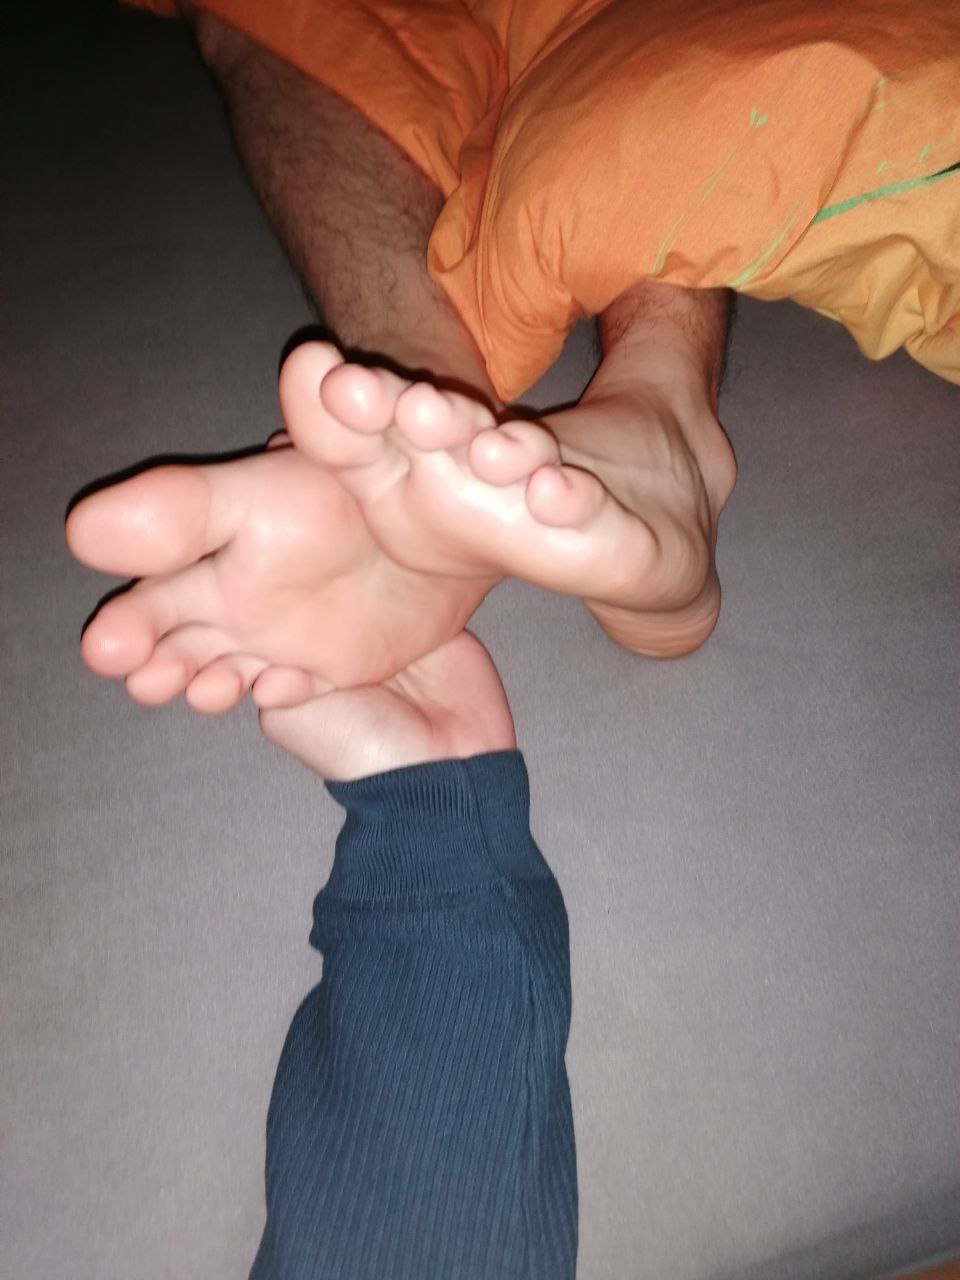 My drunk best friend's feet